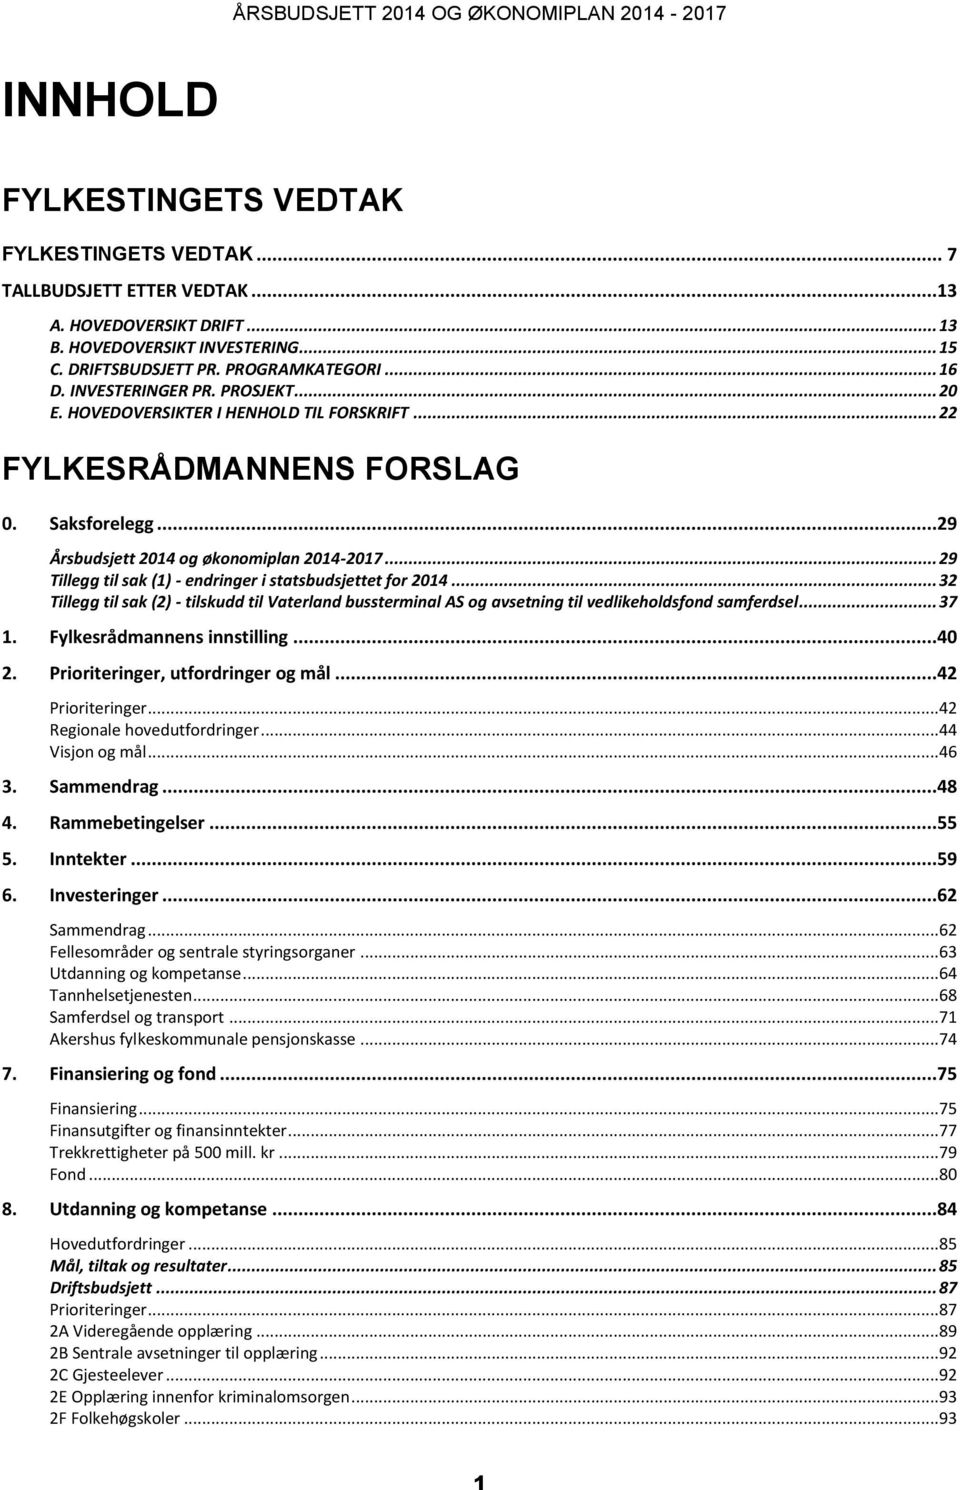 ..29 Årsbudsjett 2014 og økonomiplan 2014-2017... 29 Tillegg til sak (1) - endringer i statsbudsjettet for 2014.